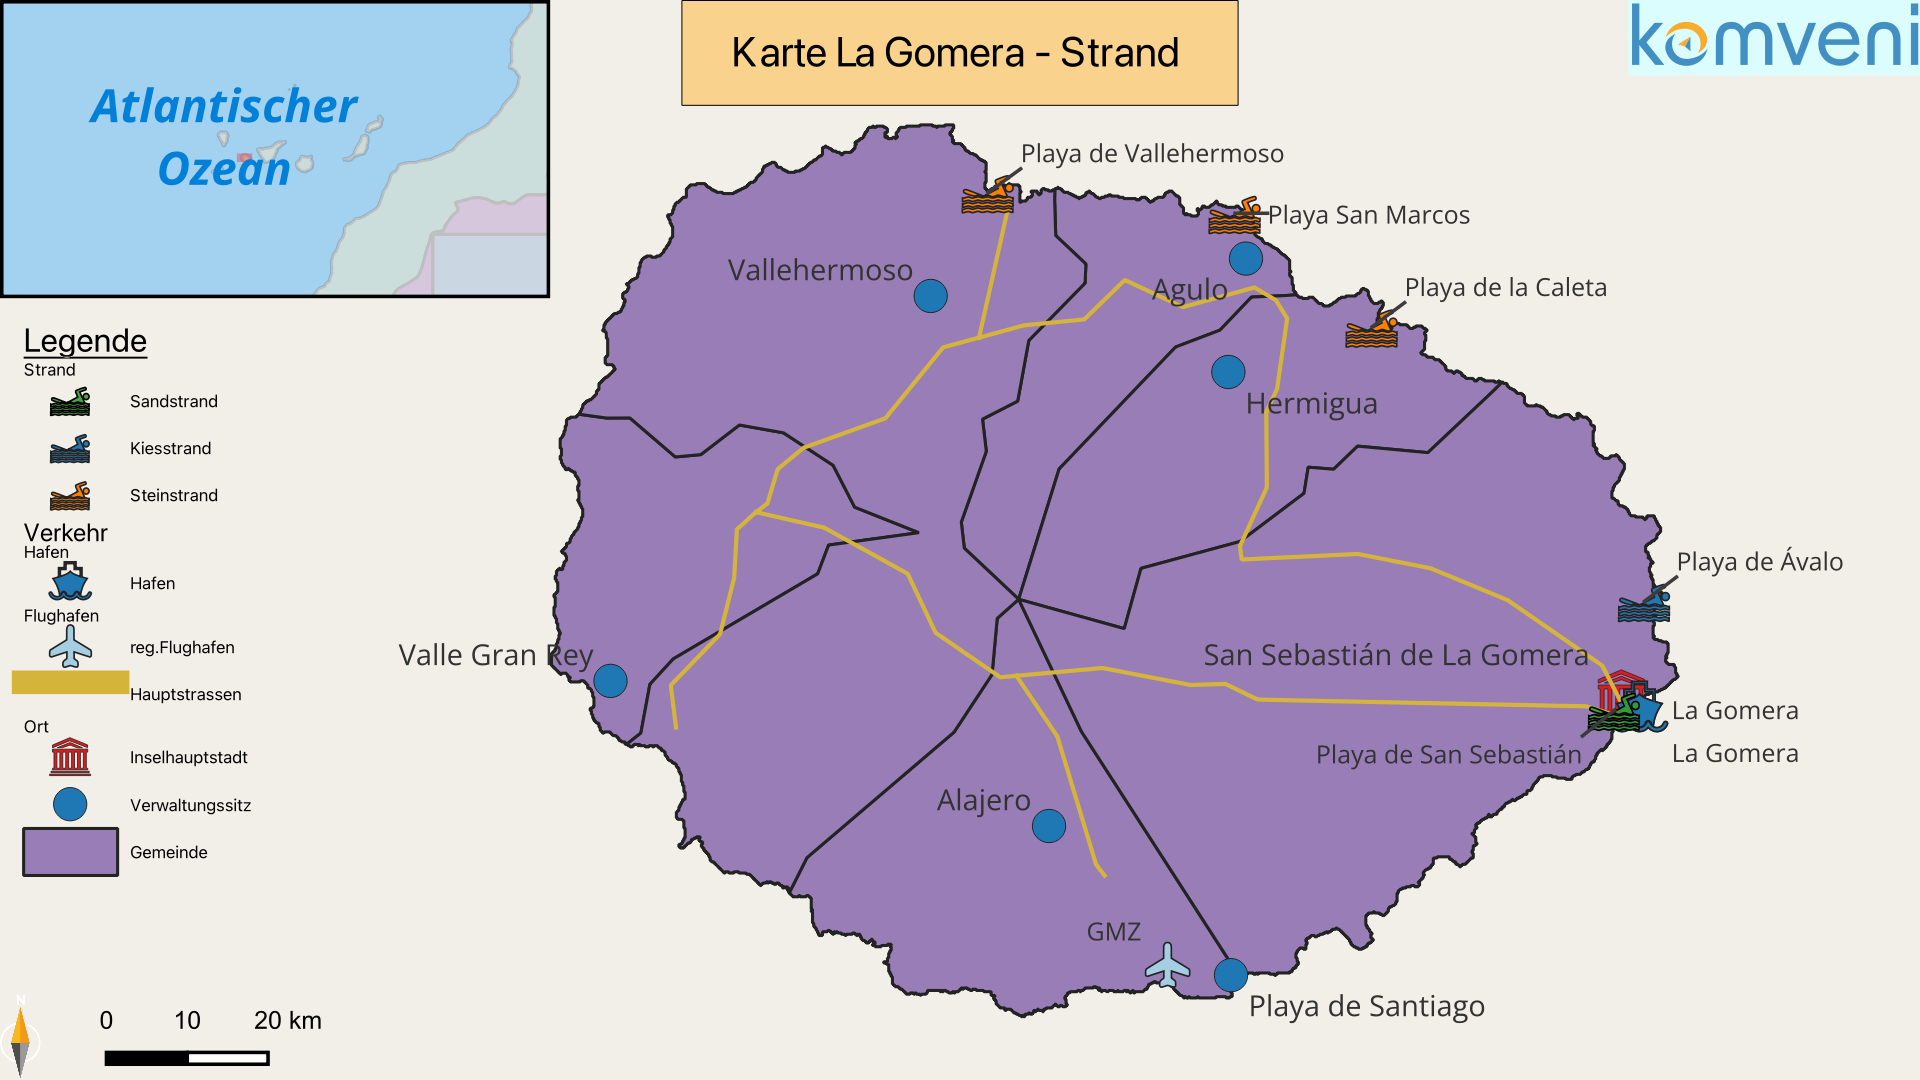 Karte La Gomera Strand